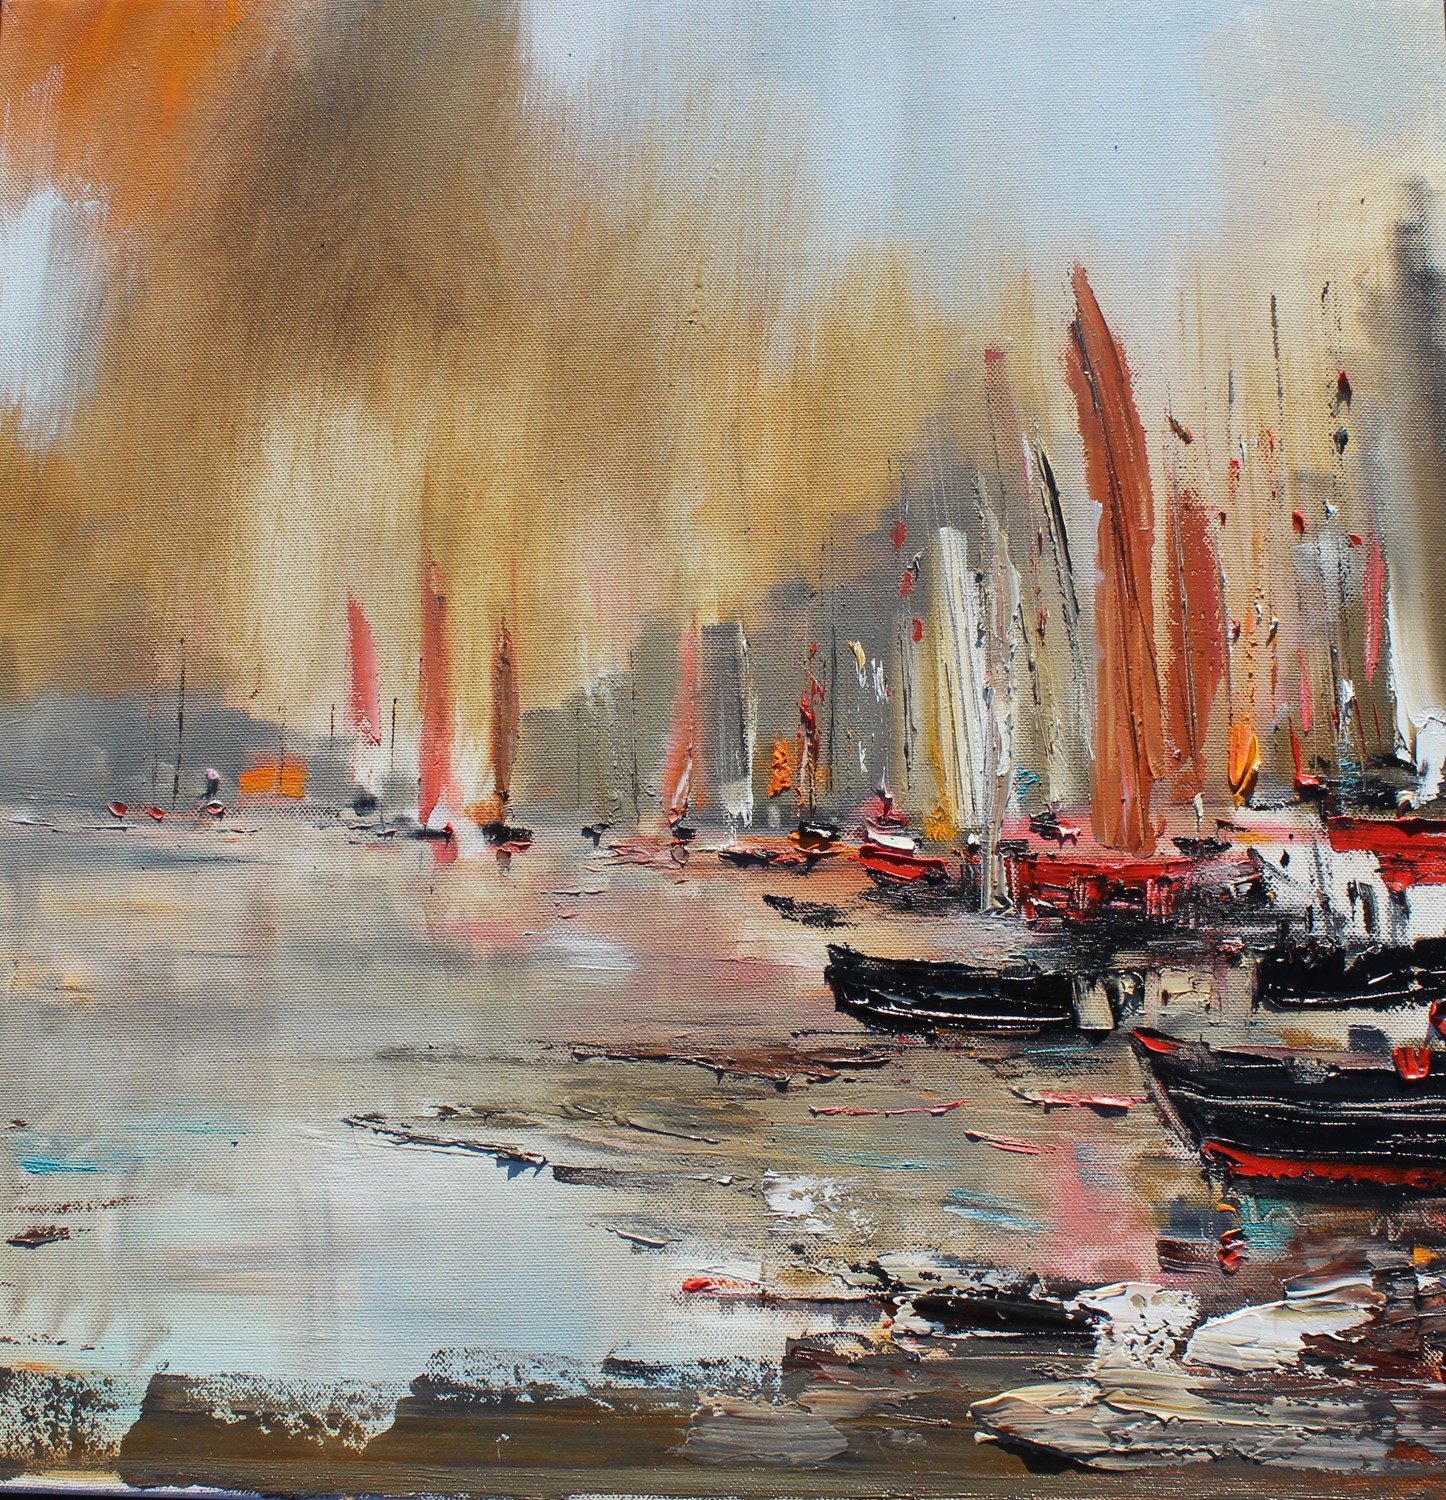 'A Fleet of Sails' by artist Rosanne Barr